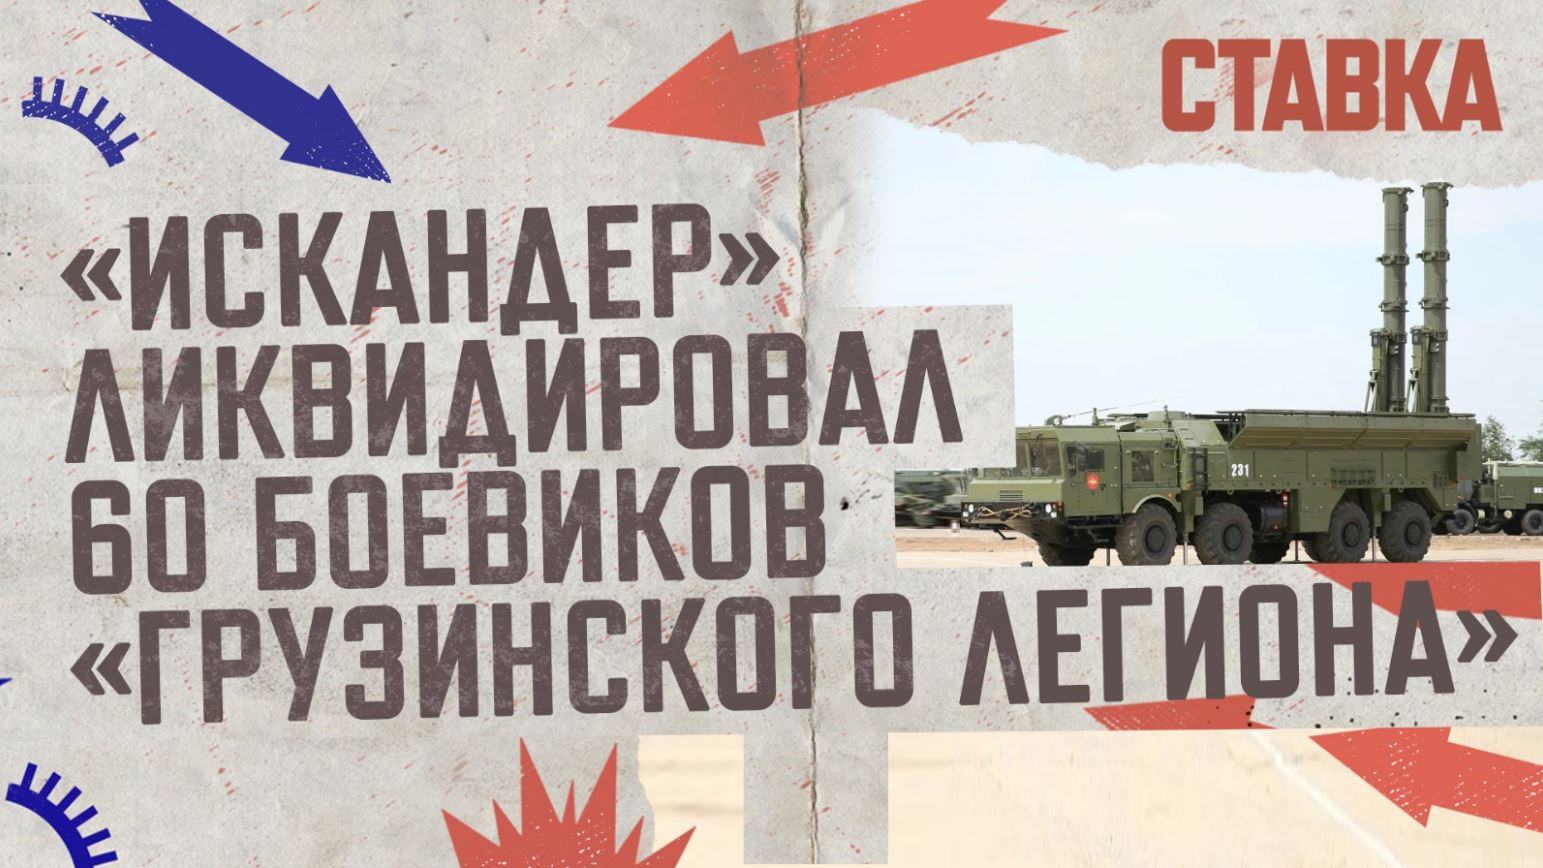 СВО 25.04 | «Искандер» ликвидировал 60 боевиков «Грузинского легиона» | СТАВКА